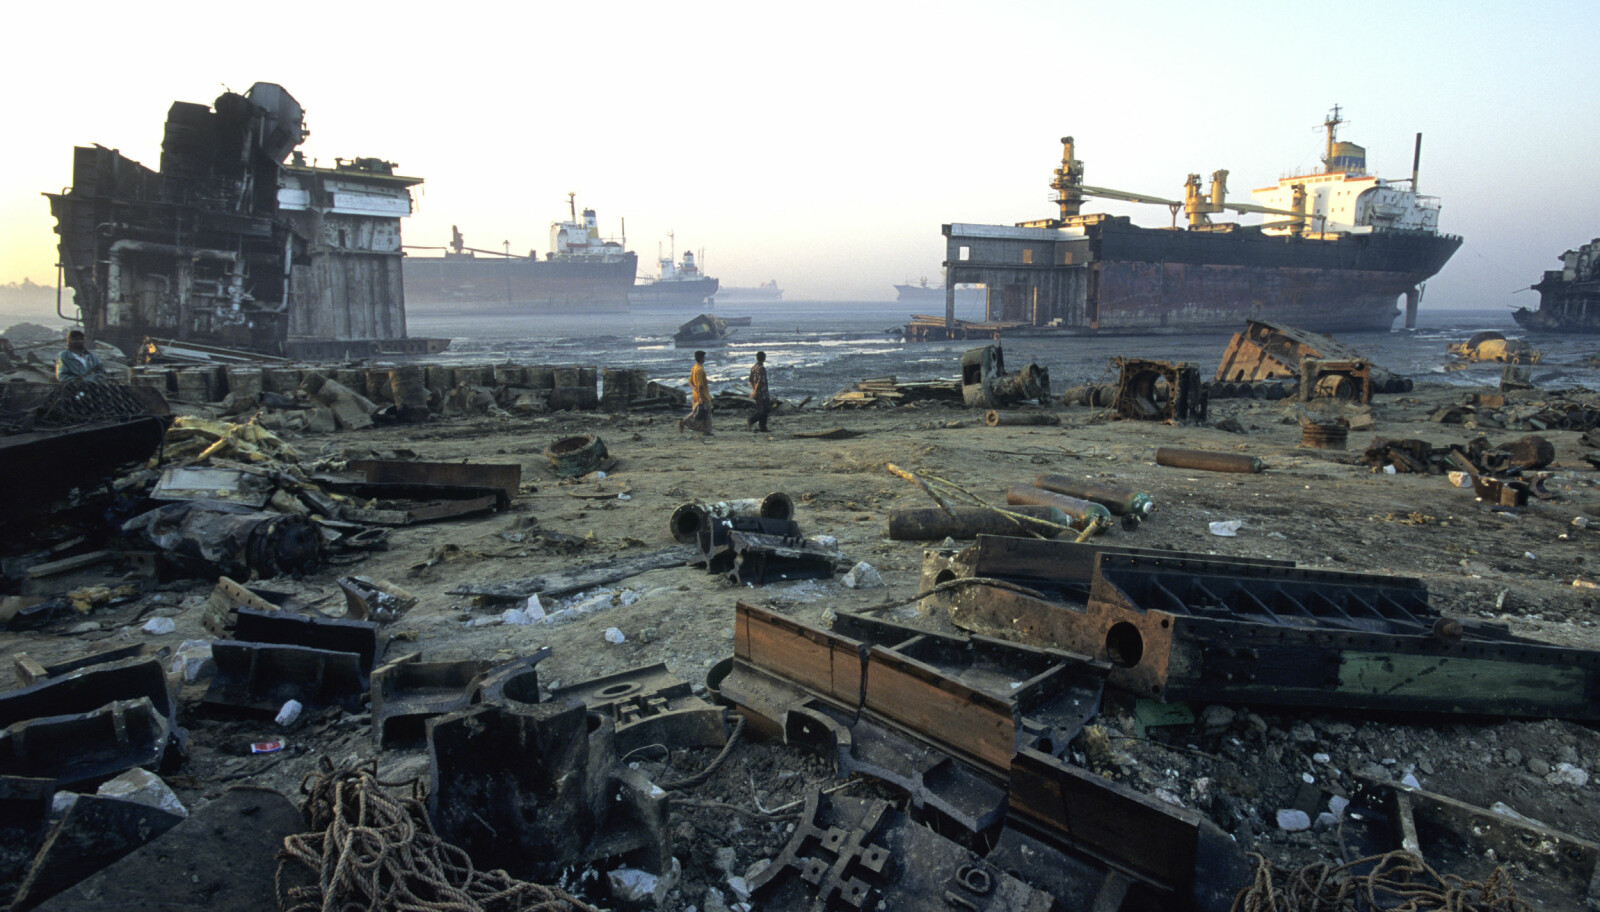 <b>I BANGLADESH:</b> Fra skipsopphoggingsstranda i Chittagong, Bangladesh, hvor skrapmetall, asbest, bly og en rekke andre rester fra opphogde skip ligger strødd på stranda.